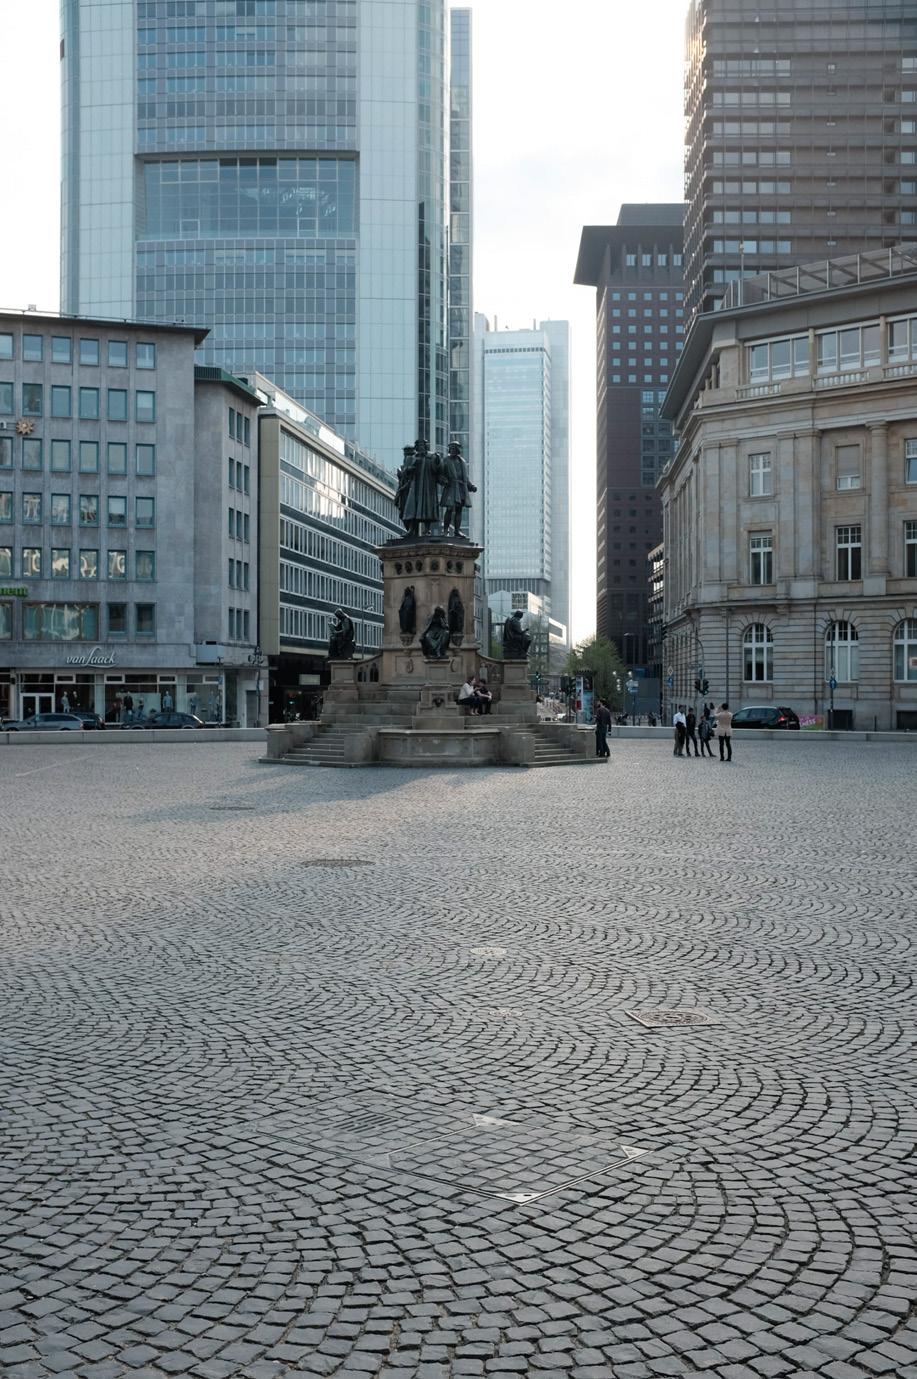 Die Filiale der Deutschen Bank, rechts angeschnitten im Bild, bleibt erhalten. Photo left: The Johannes-Gutenberg-Denkmal (Johannes Gutenberg Monument) with fountain.